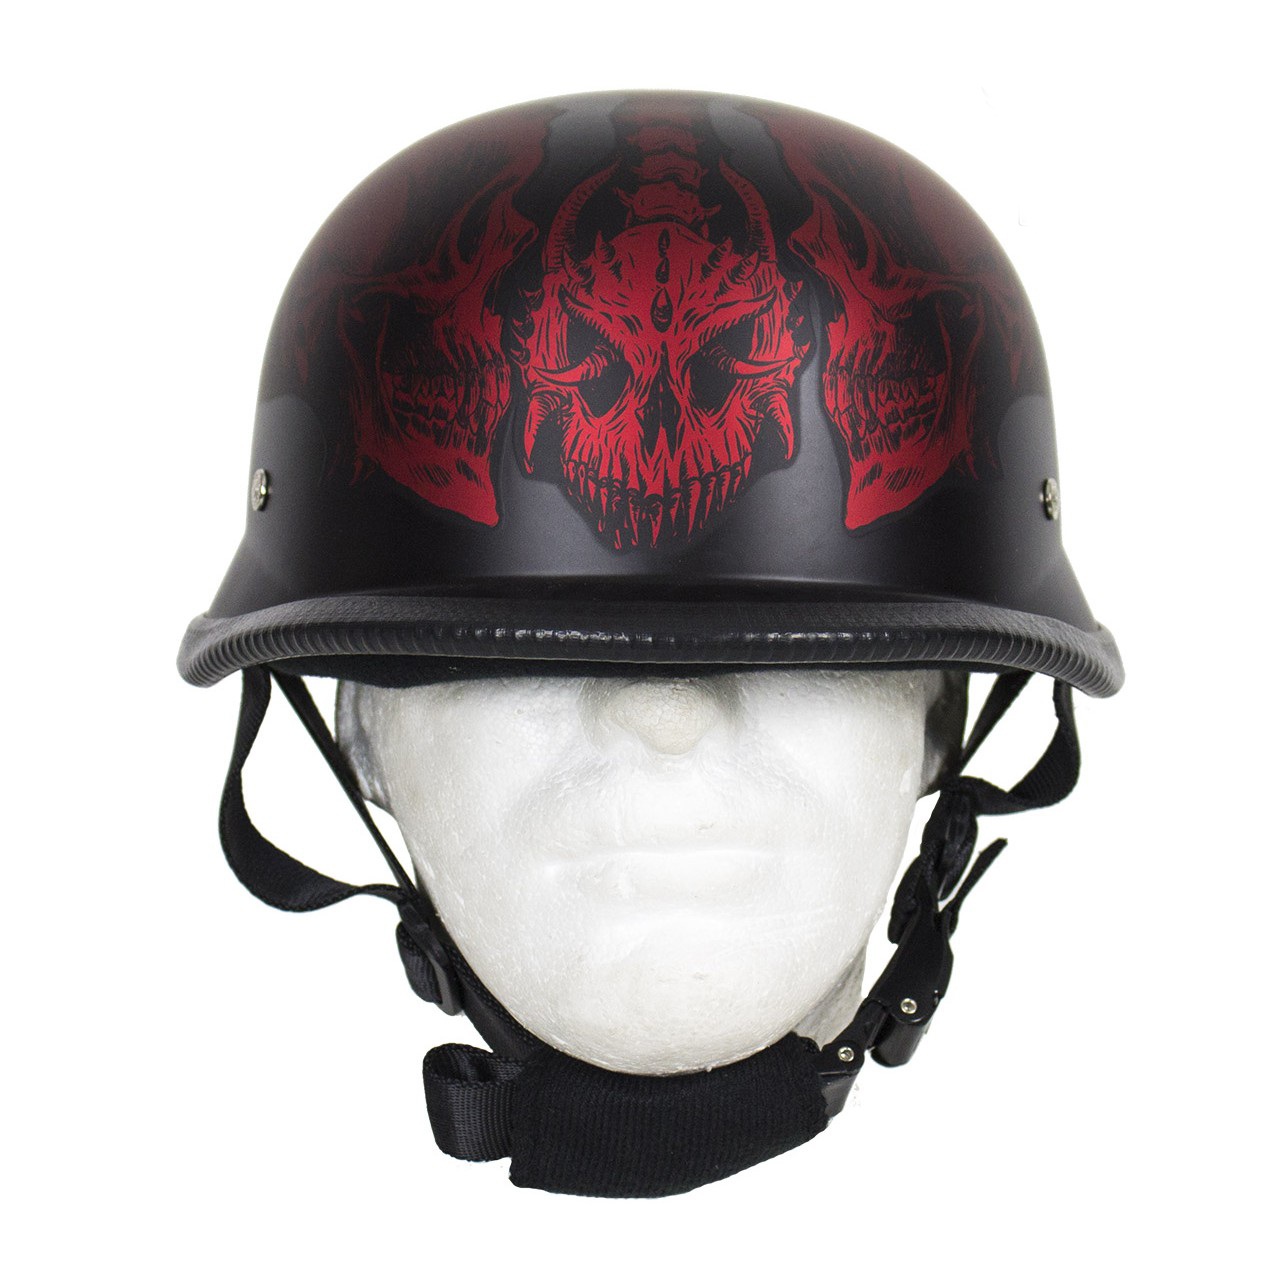 Matte Burgundy Novelty Helmet with Horned Skeletons